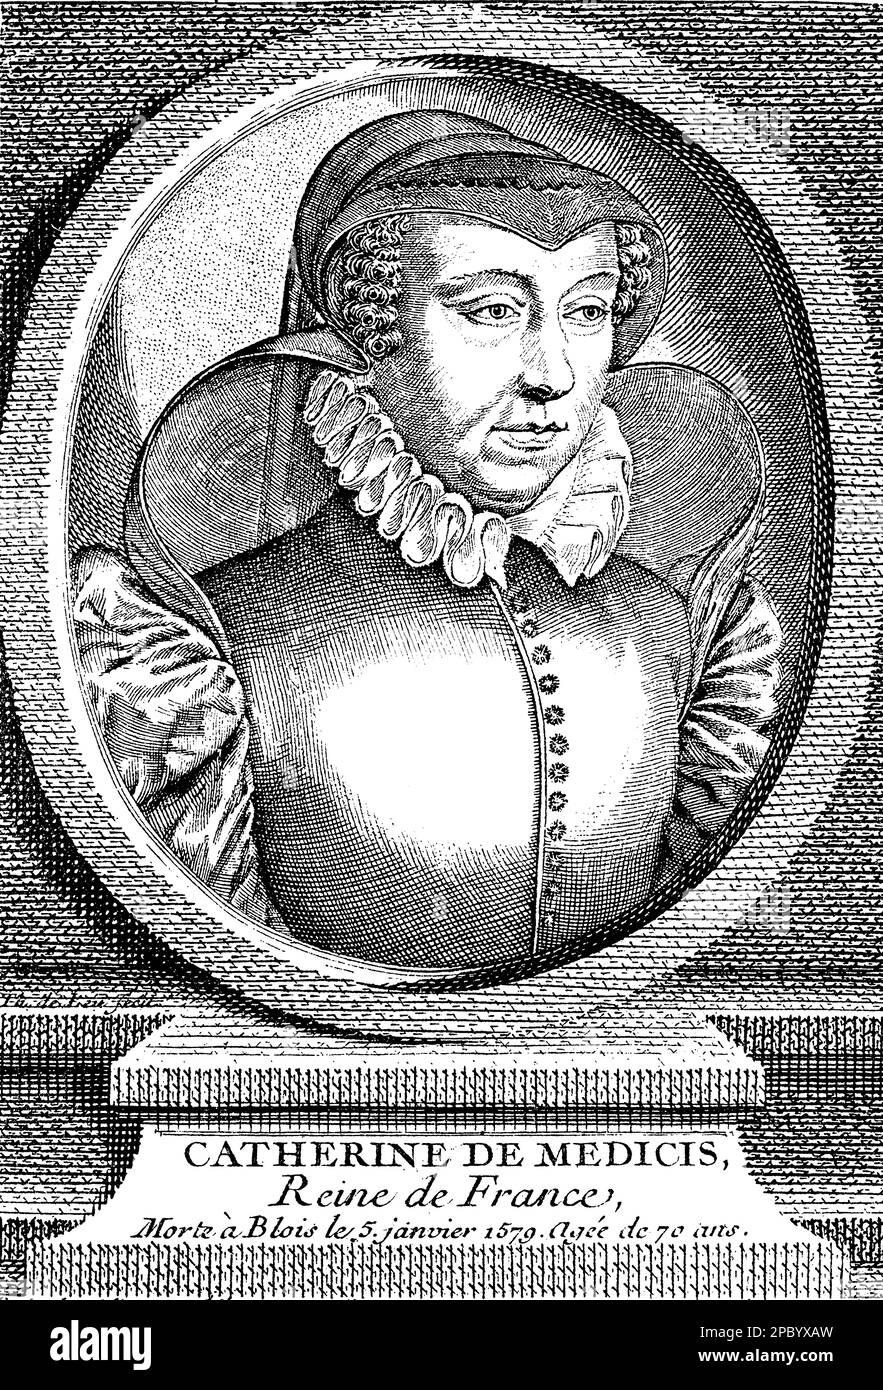 Catherine de' Medici était une puissante reine consort et régente de France au cours du 16th siècle. Elle était connue pour son influence politique, son patronage des arts et son rôle controversé dans les guerres de religion françaises. Elle était également connue pour son intérêt pour l'astrologie et son inFAMOUS 'Cabinet des horreurs. Banque D'Images